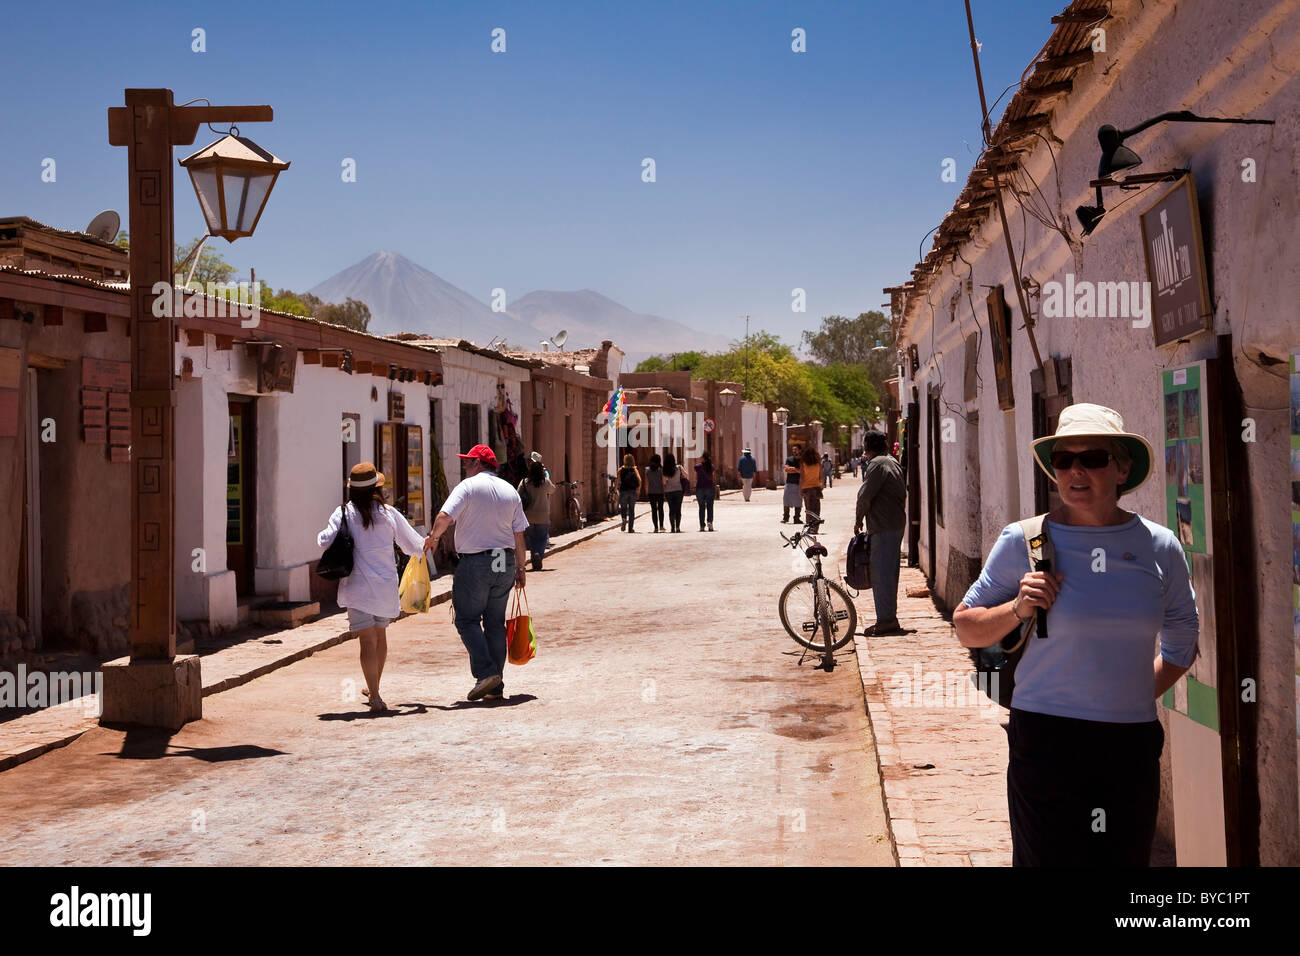 Street view of san pedro de atacama hi-res stock photography and images -  Alamy